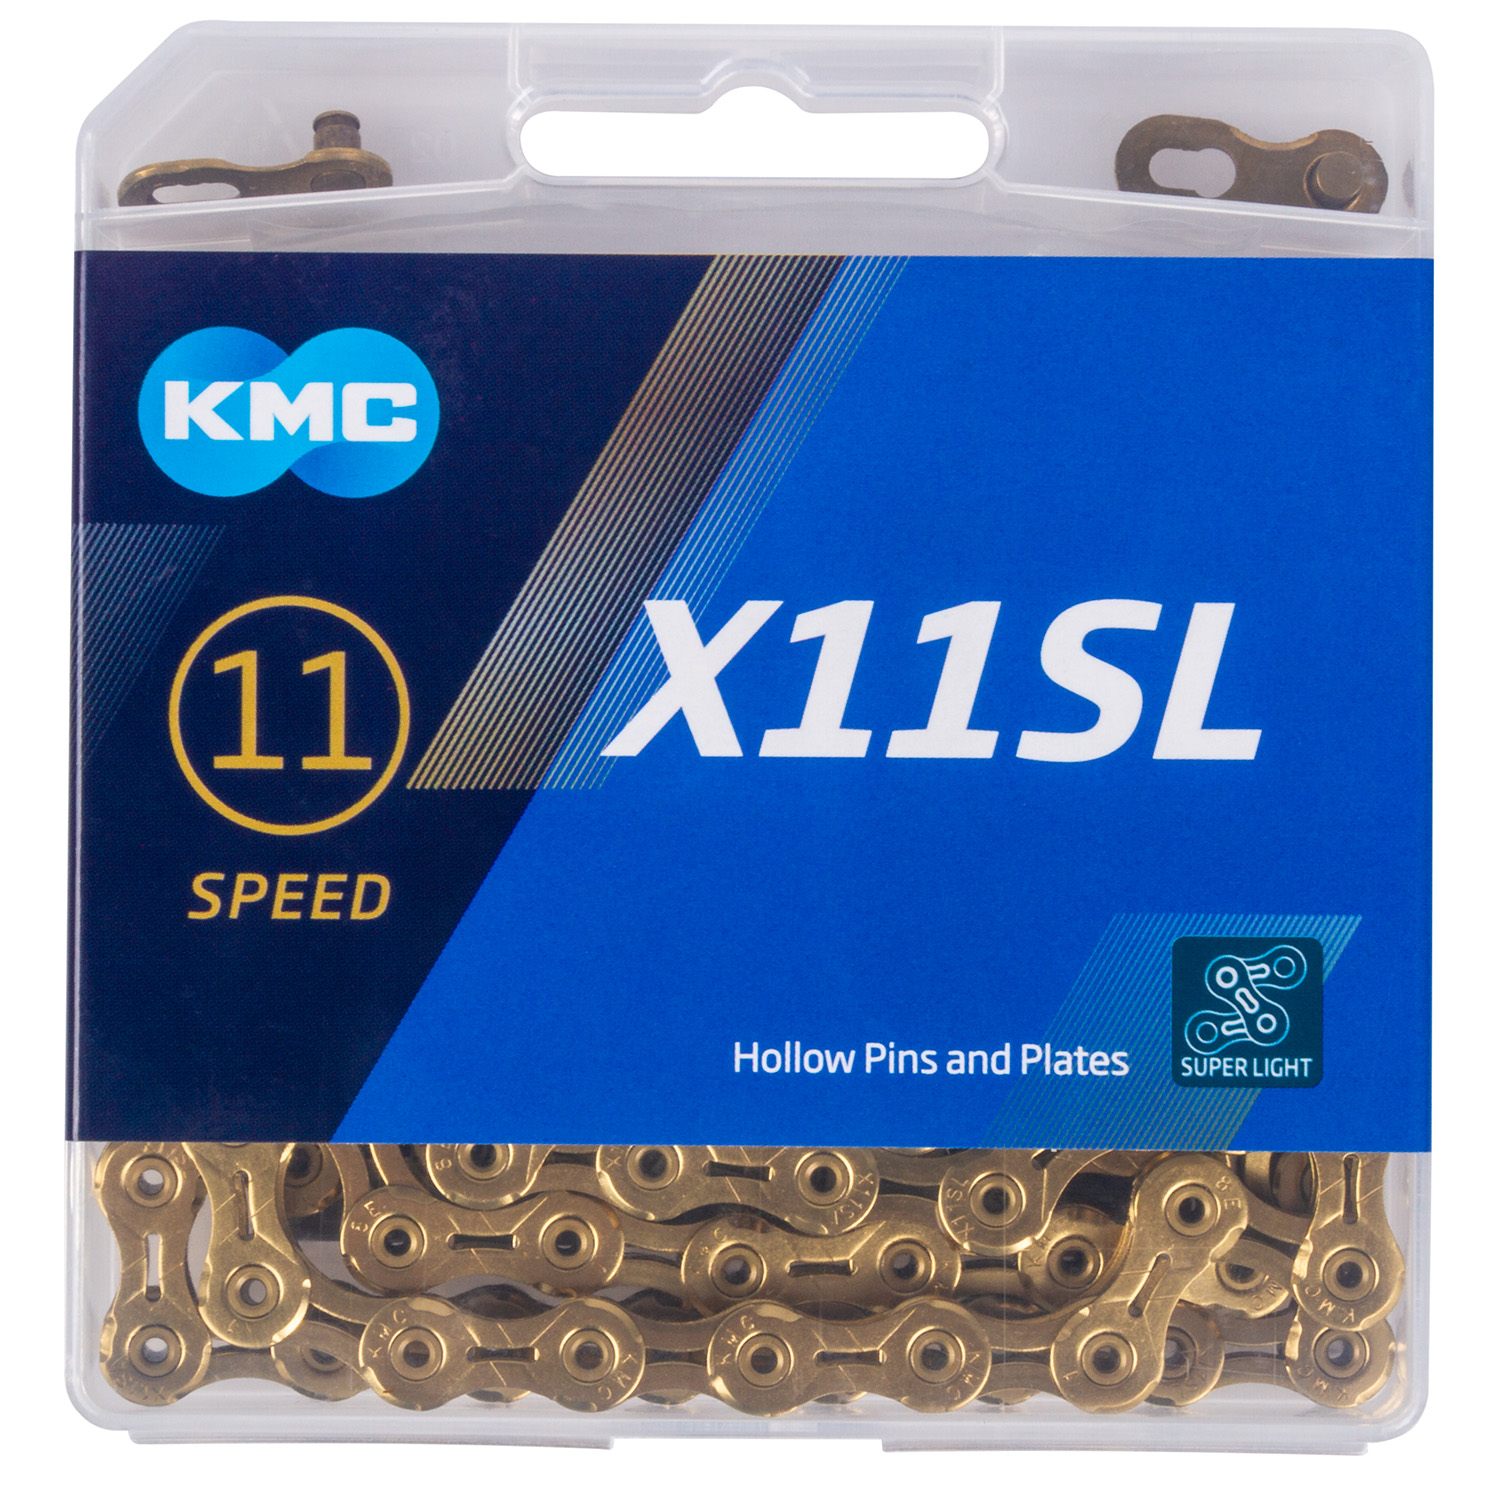 KMC Kette X11SL Ti-N GOLD 118 SUPERLIGHT 11-fach SB verpackt in Einzelbox